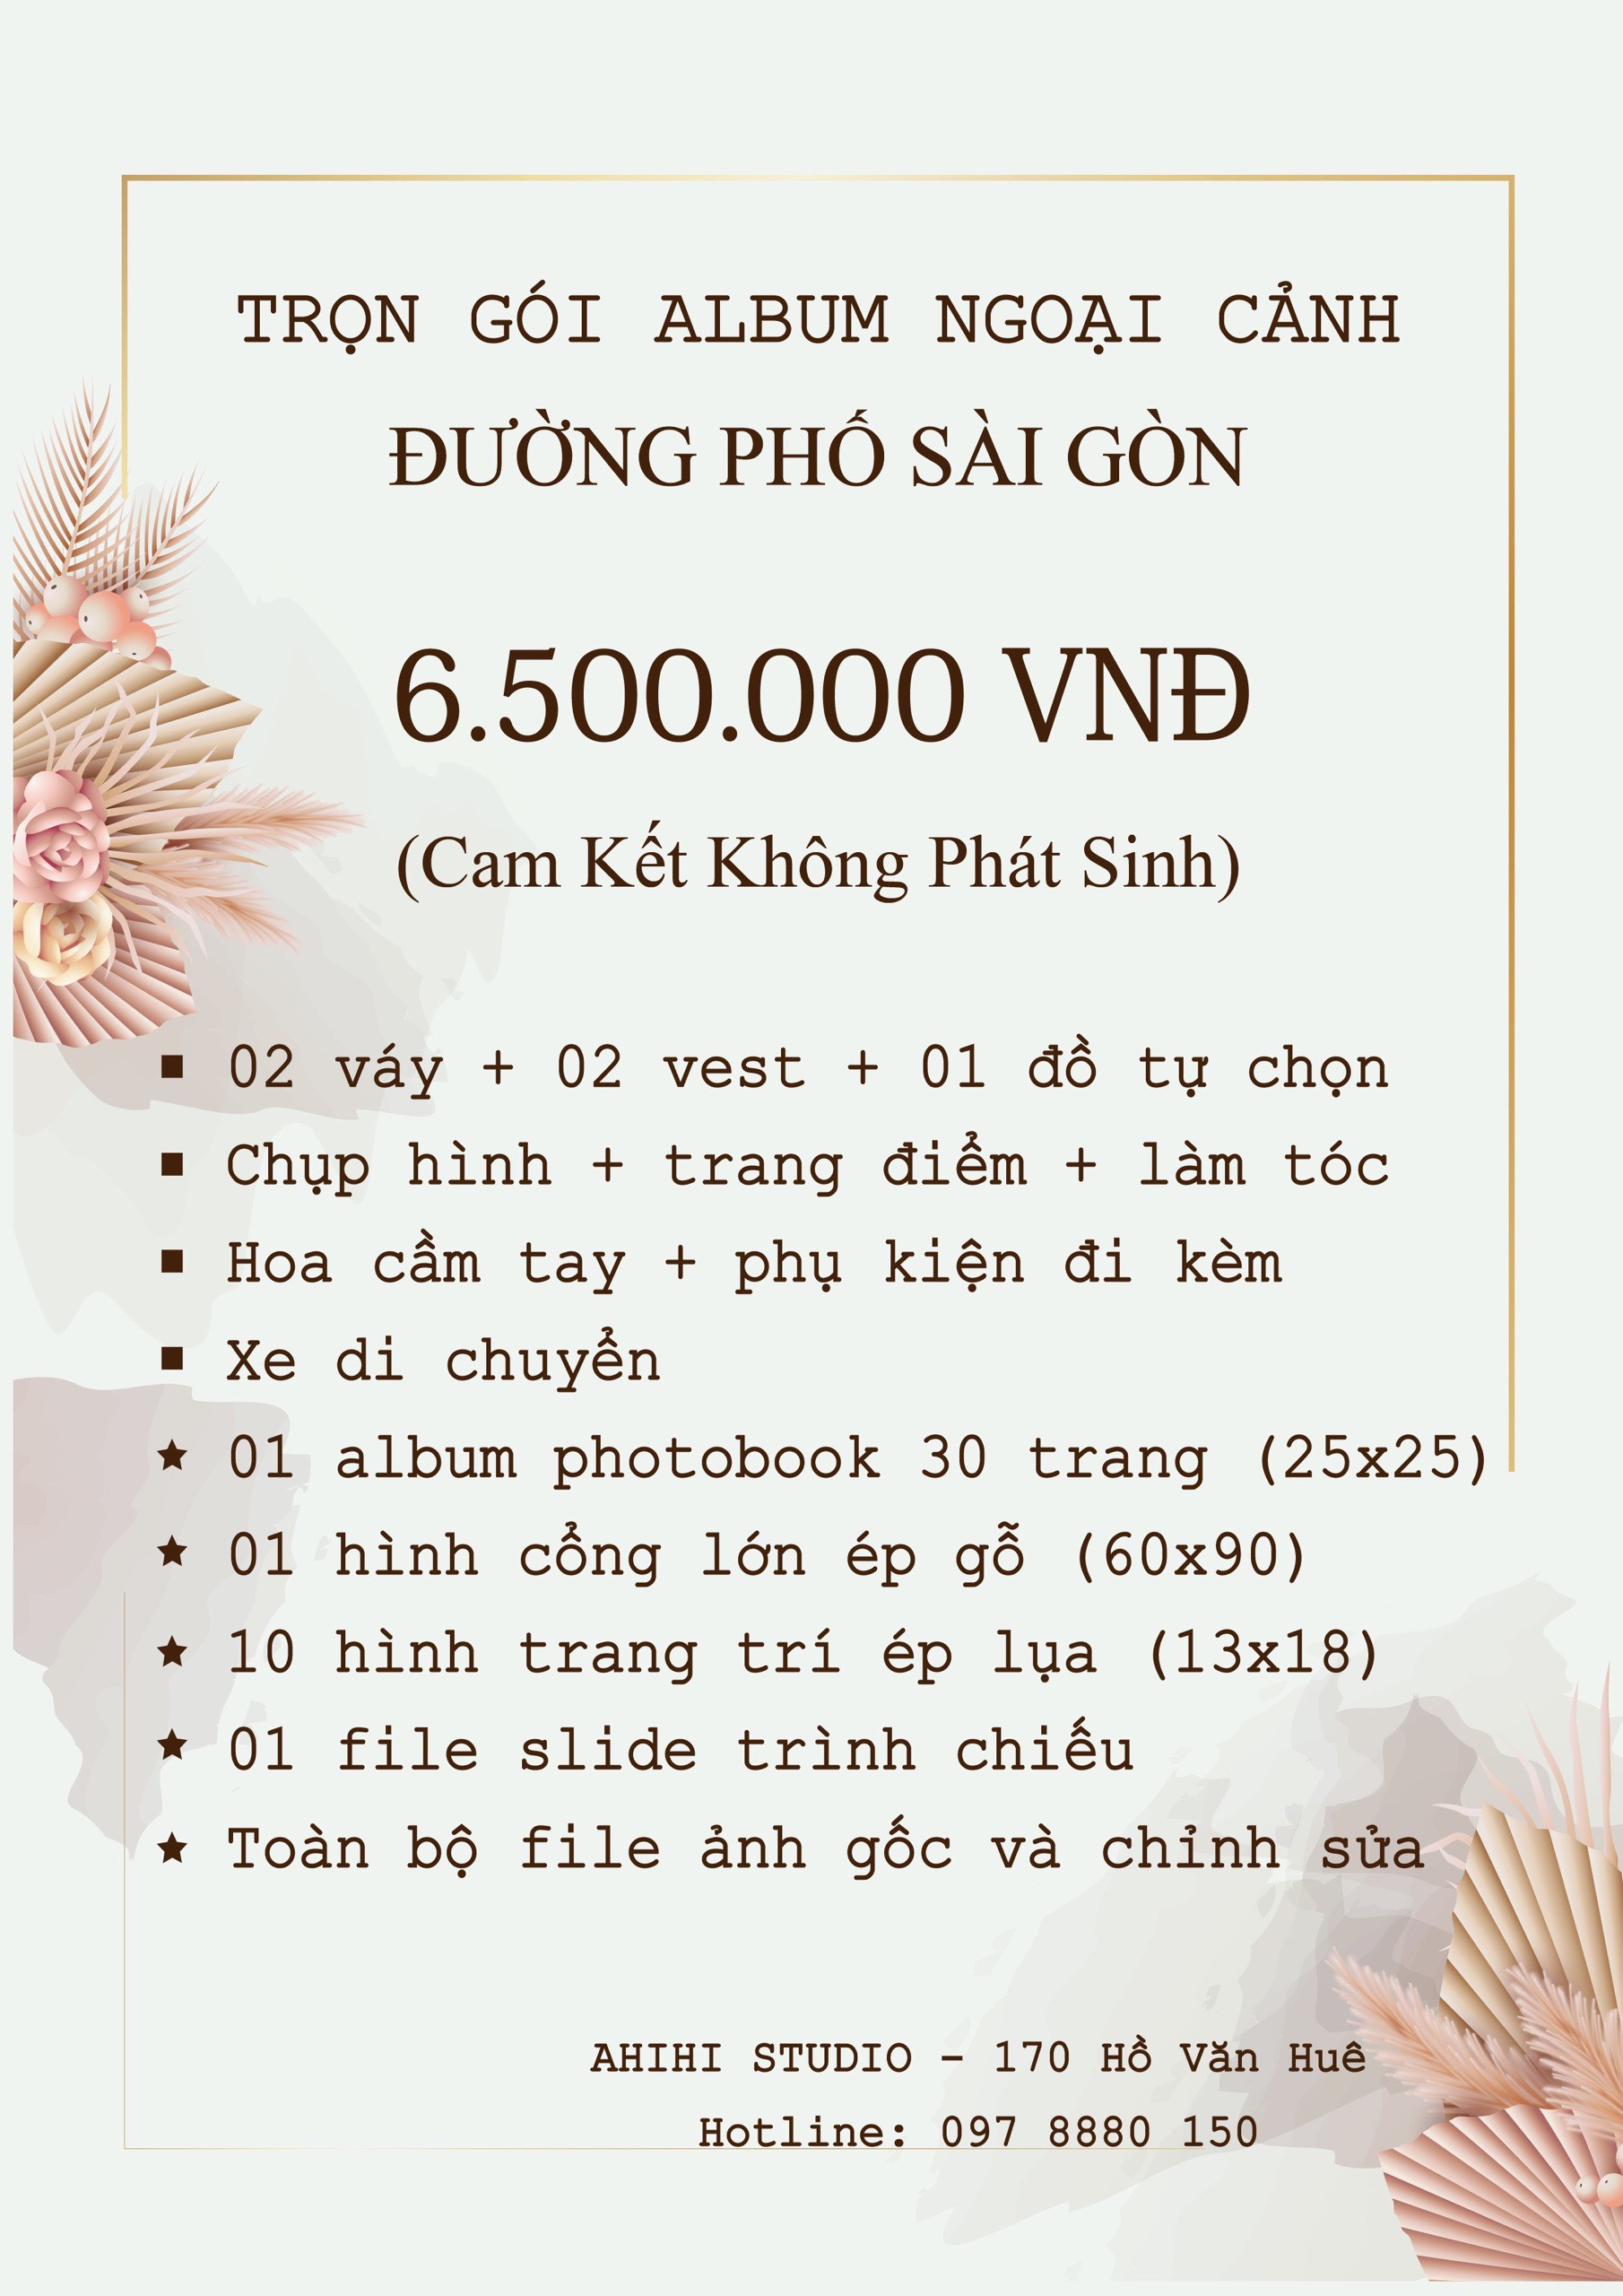 Bảng giá trọn gói chụp hình cưới ngoại cảnh Sài Gòn - TPHCM mới nhất 2022